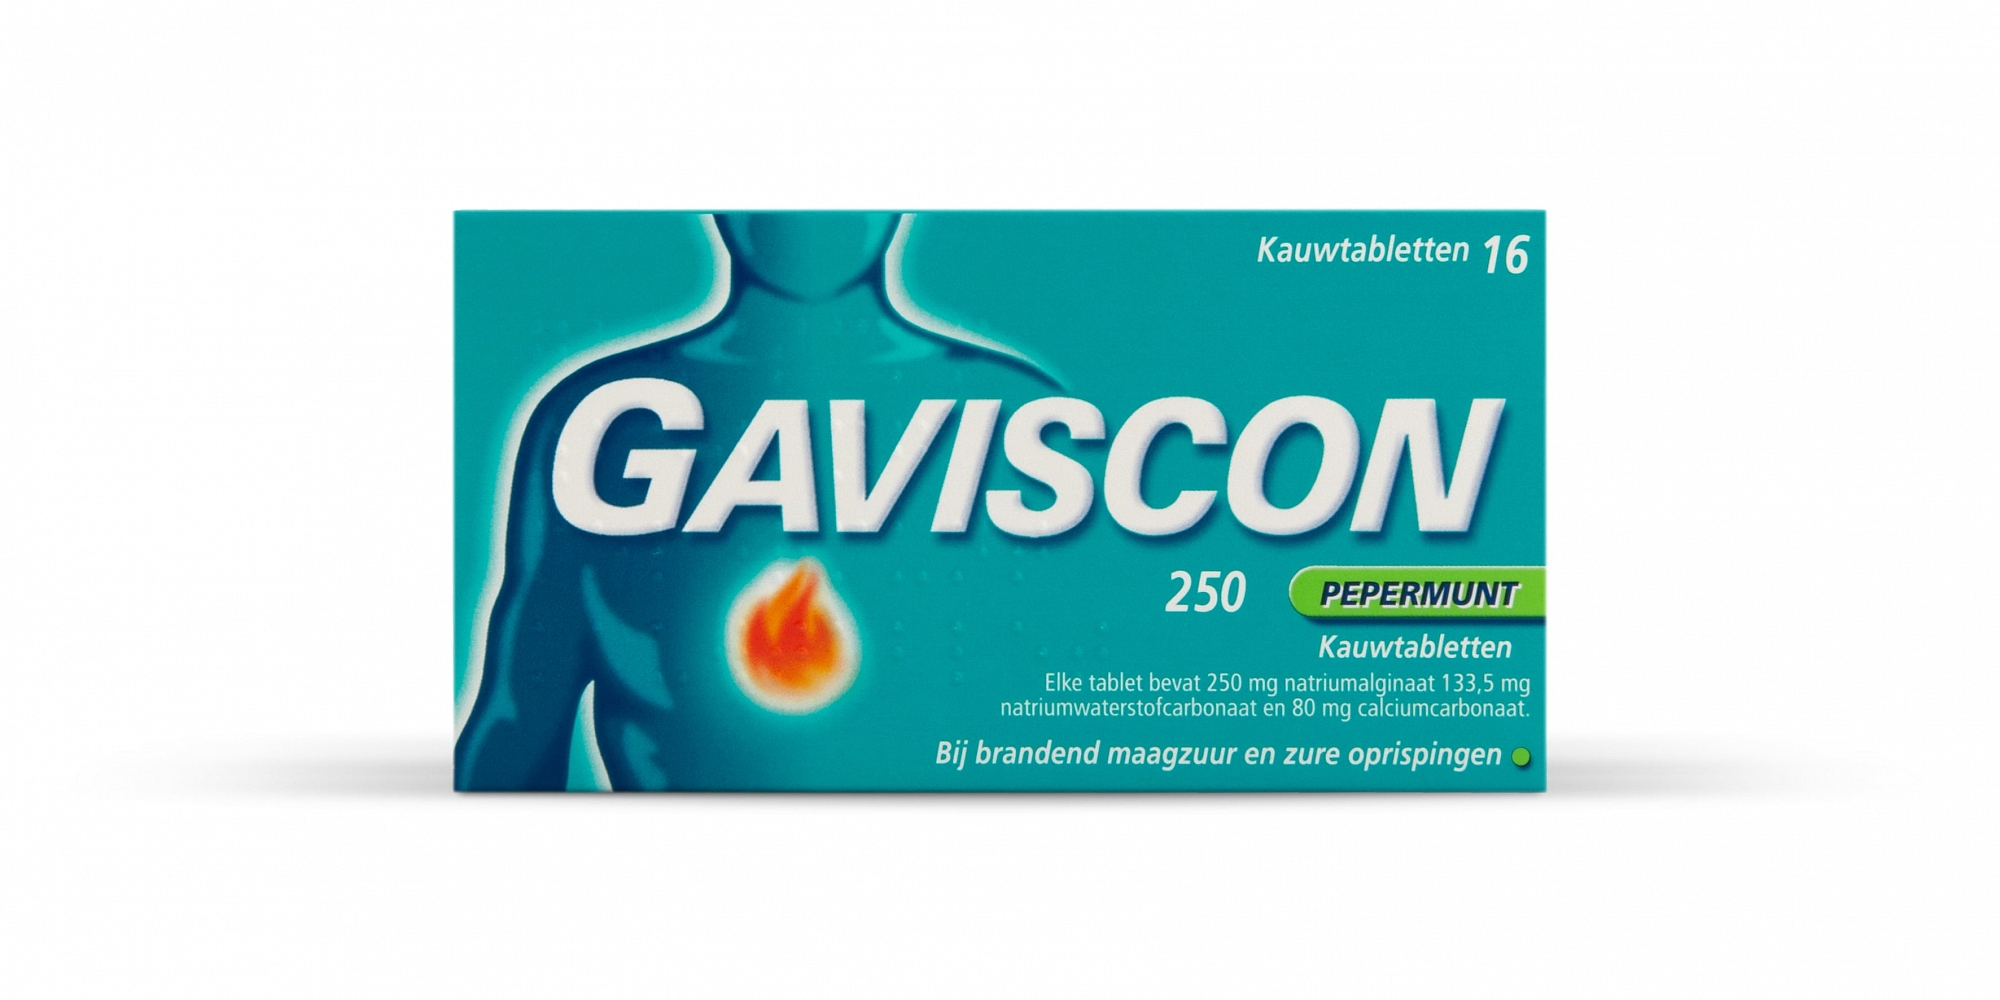 Gaviscon 250 Pepermunt